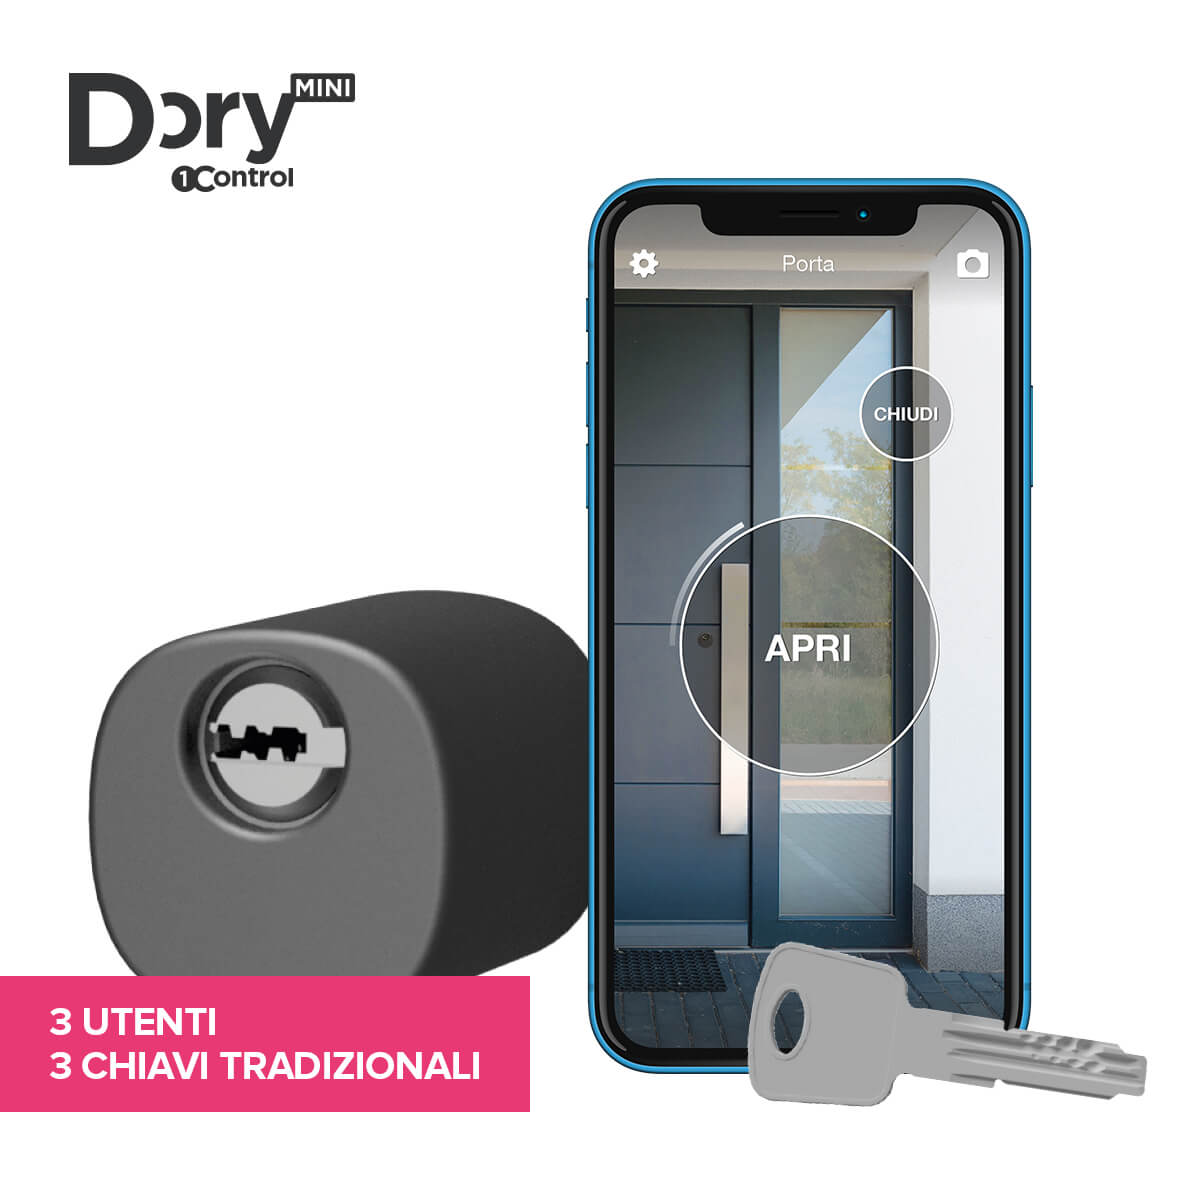 1Control DORY MINI serratura elettronica smart home